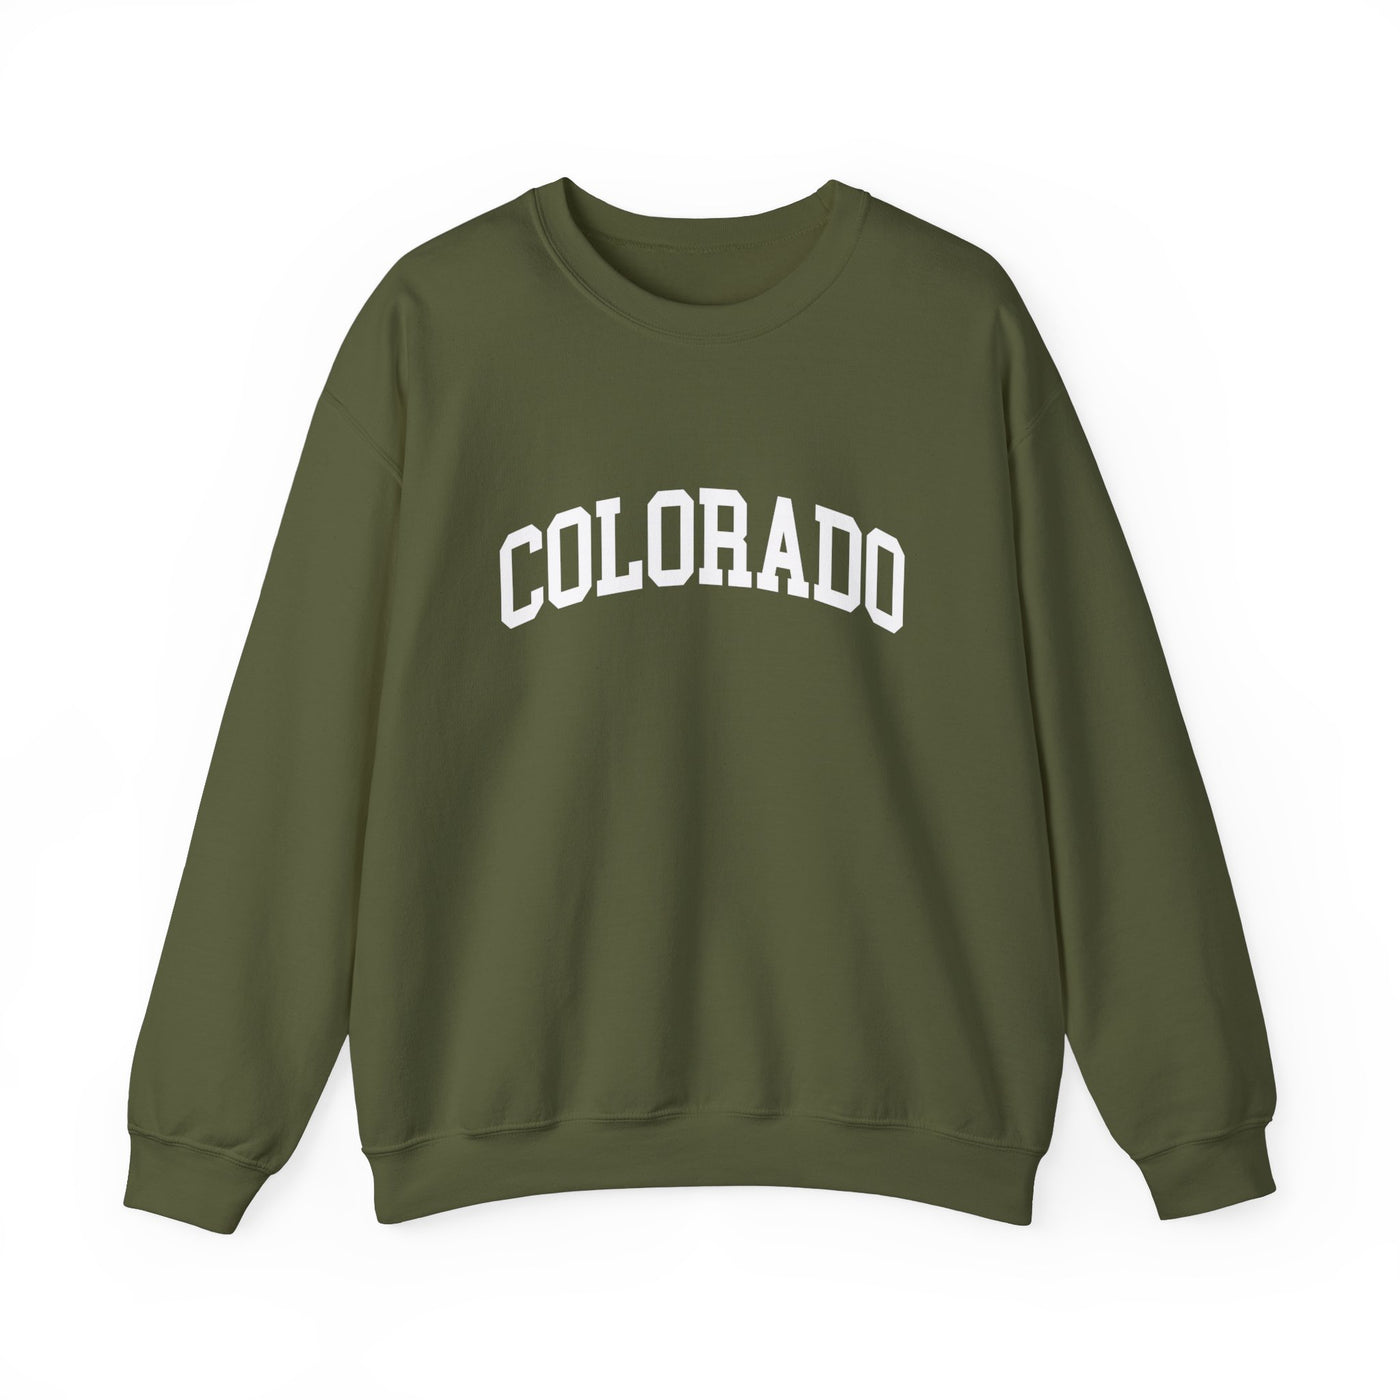 Colorado Collegiate Crewneck Sweatshirt